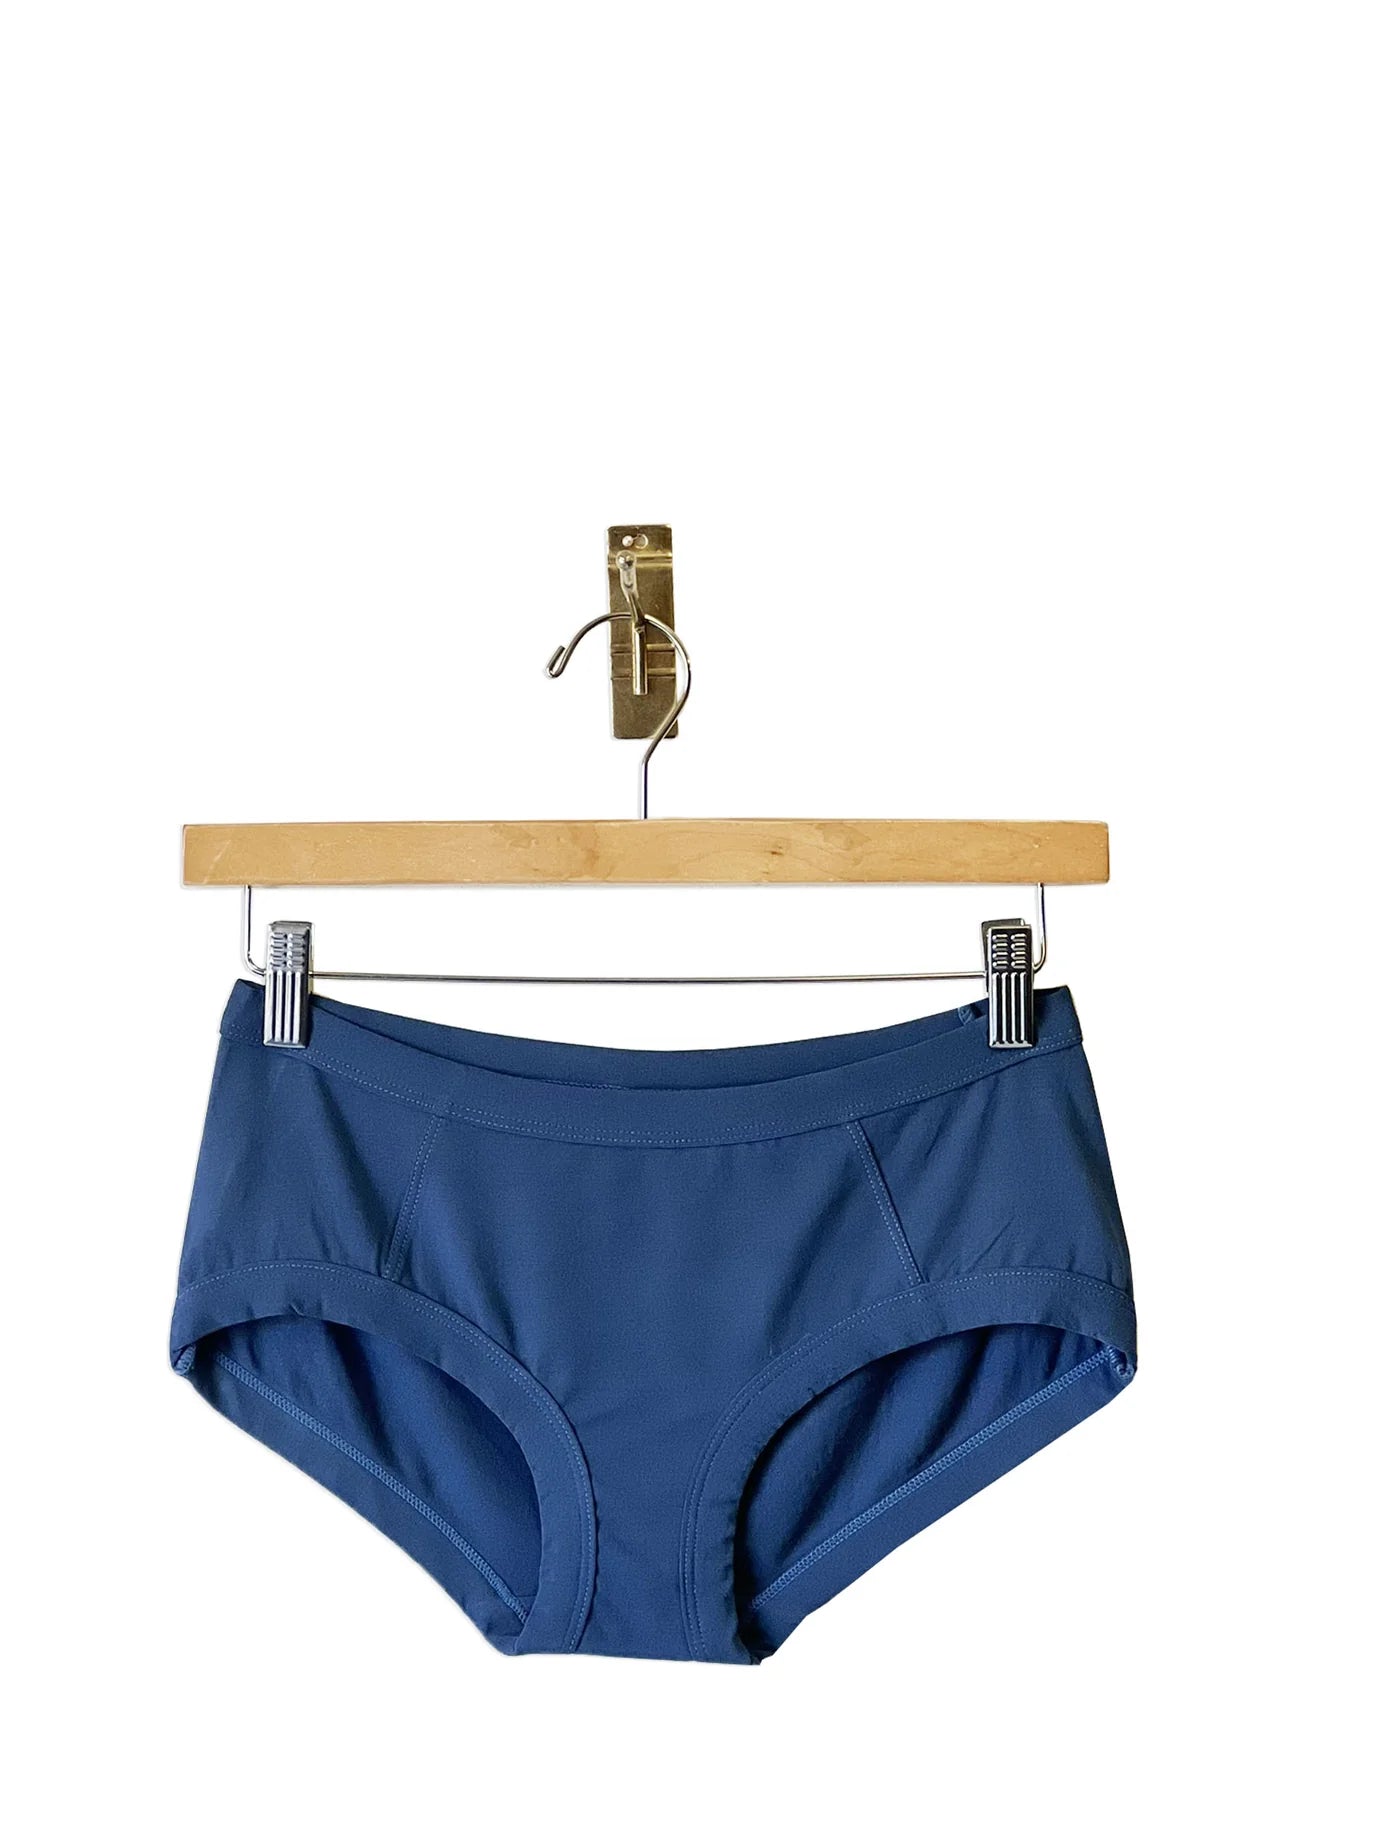 Low Waisted Underwear- Denim Blue